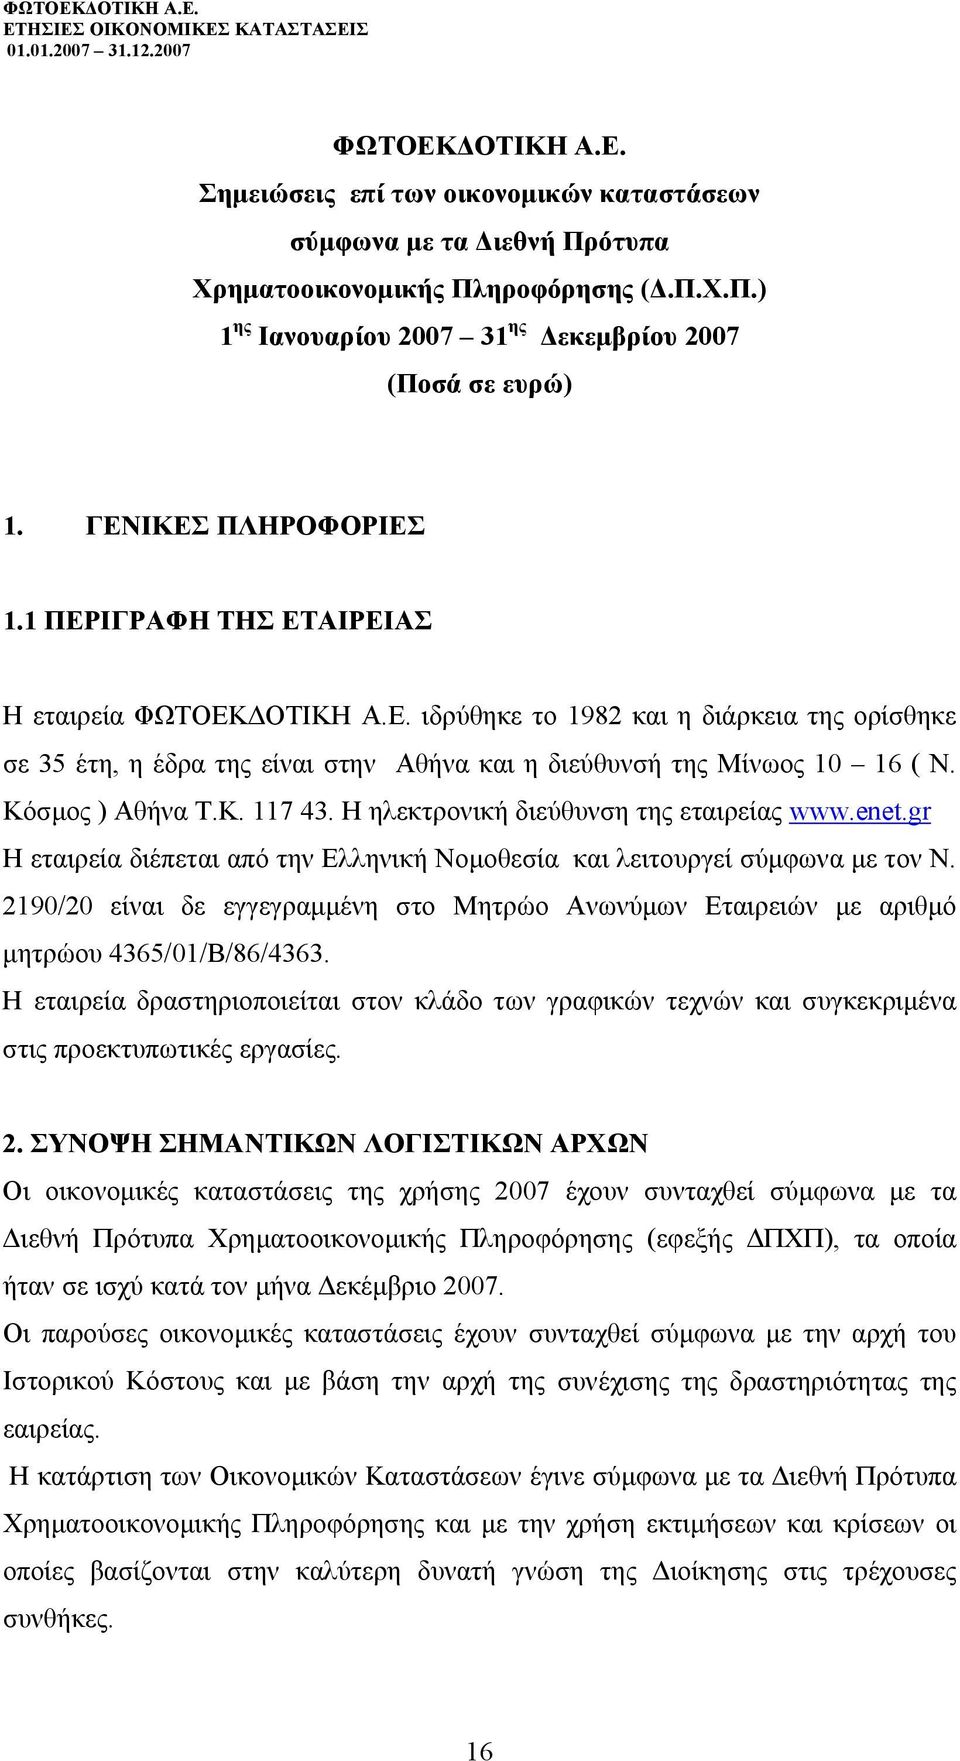 Κόσµος ) Αθήνα Τ.Κ. 117 43. Η ηλεκτρονική διεύθυνση της εταιρείας www.enet.gr Η εταιρεία διέπεται από την Ελληνική Νοµοθεσία και λειτουργεί σύµφωνα µε τον Ν.